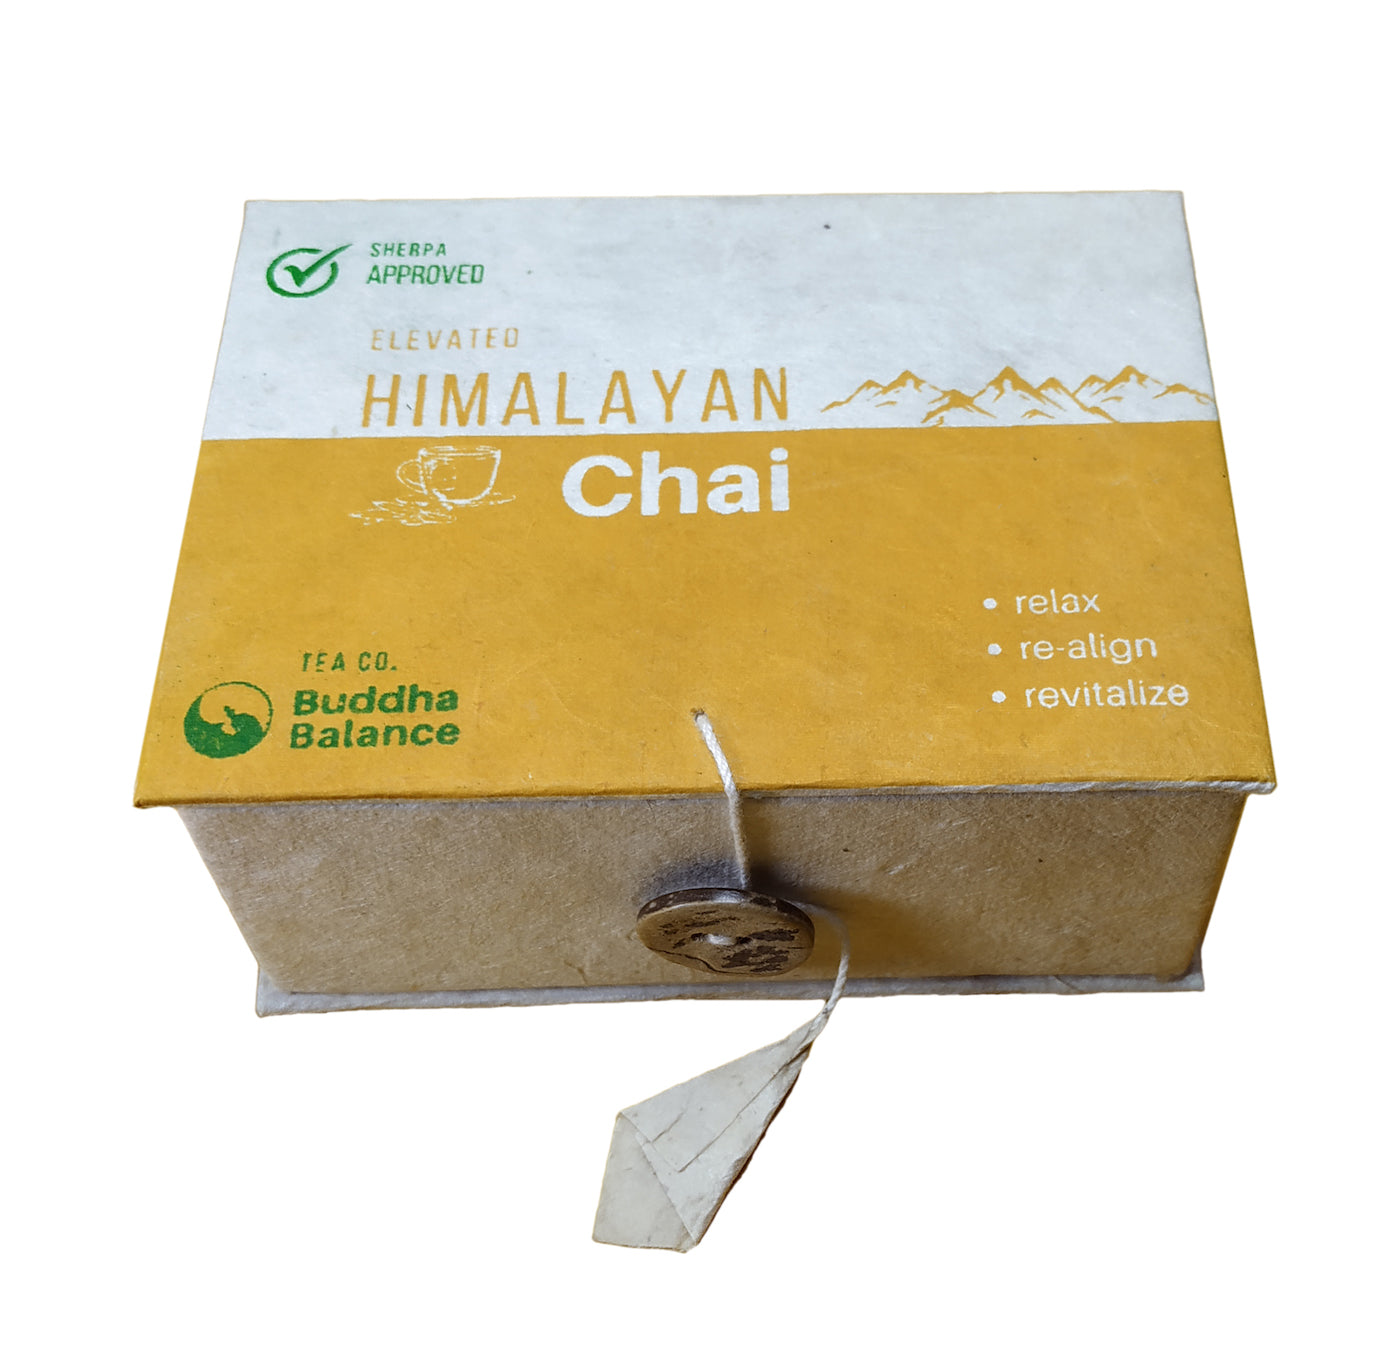 Elevated Himalayan Chai: Buddha Balance Tea Co.